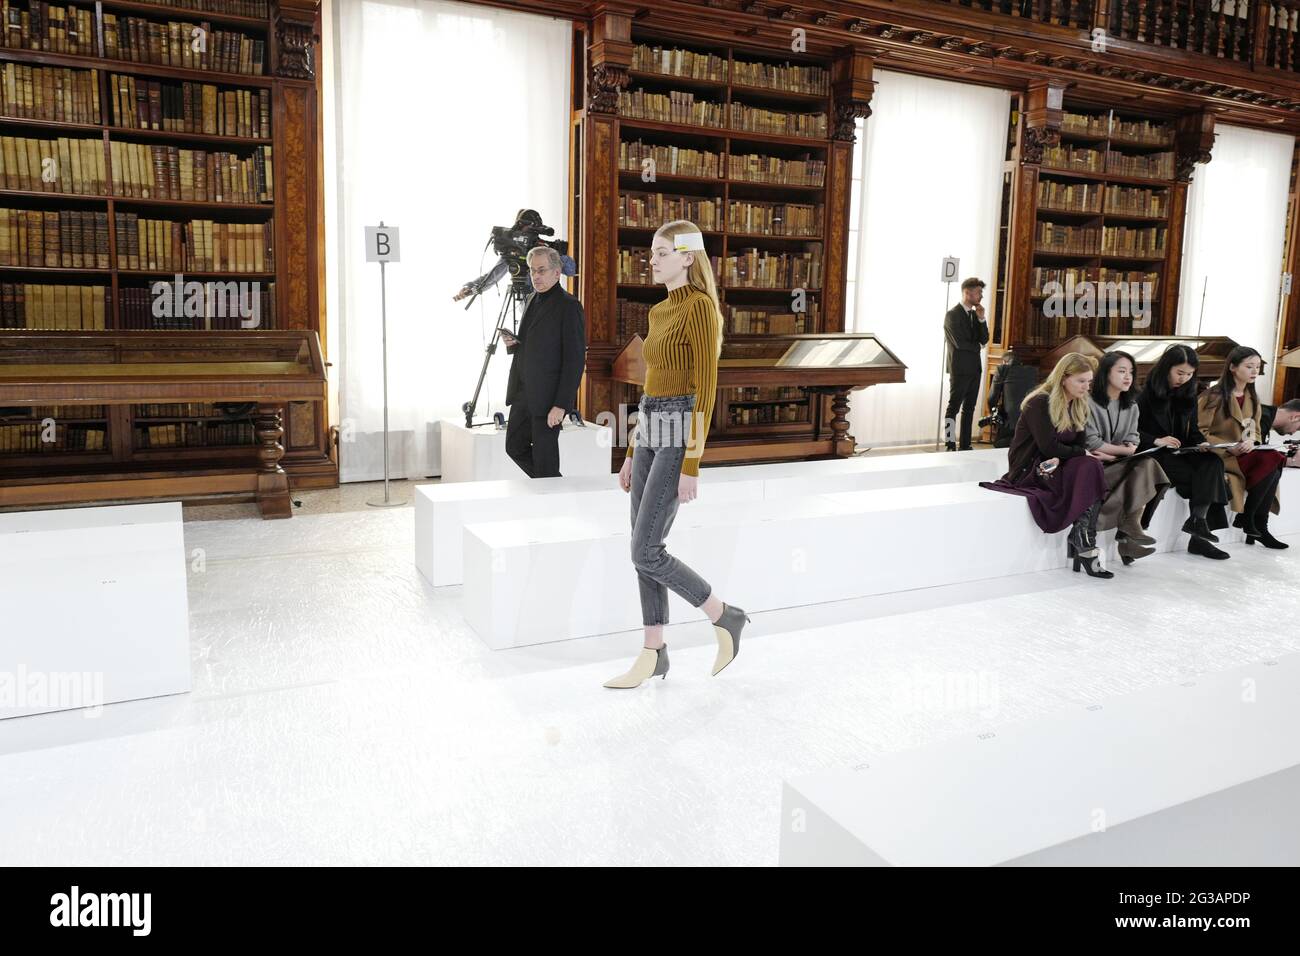 Passerella dei modelli, durante la sfilata di moda autunno/inverno di Giada, all'interno della biblioteca Braidense della Pinacoteca di Brera, a Milano. Foto Stock